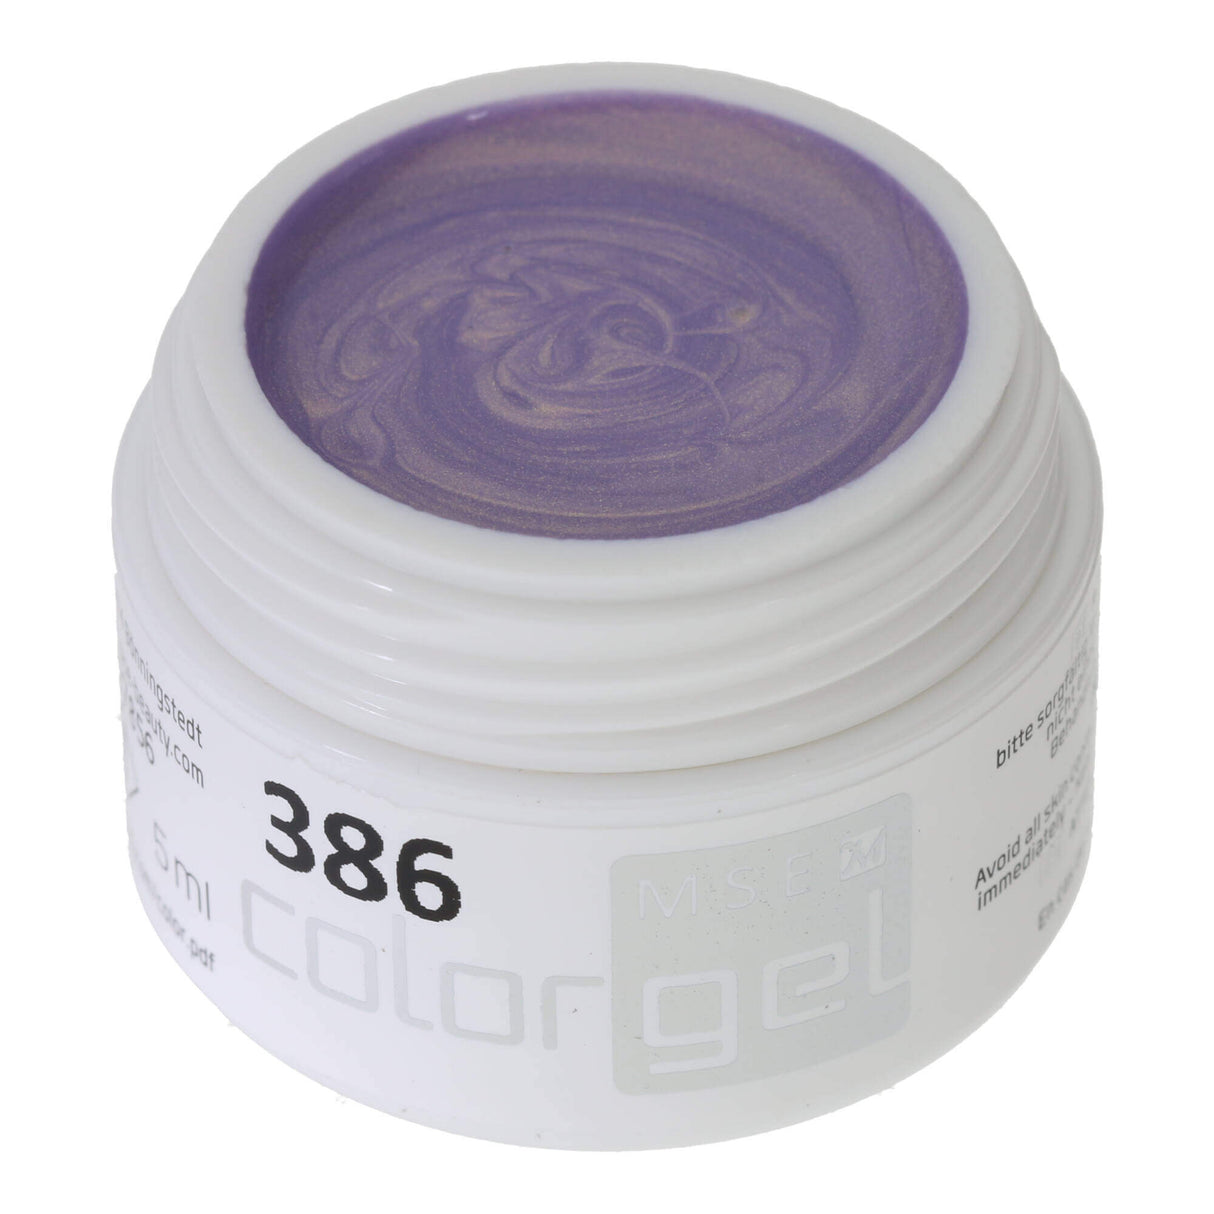 # 386 Premium EFFECT Color Gel 5ml Ton lilas délicat avec un léger reflet doré